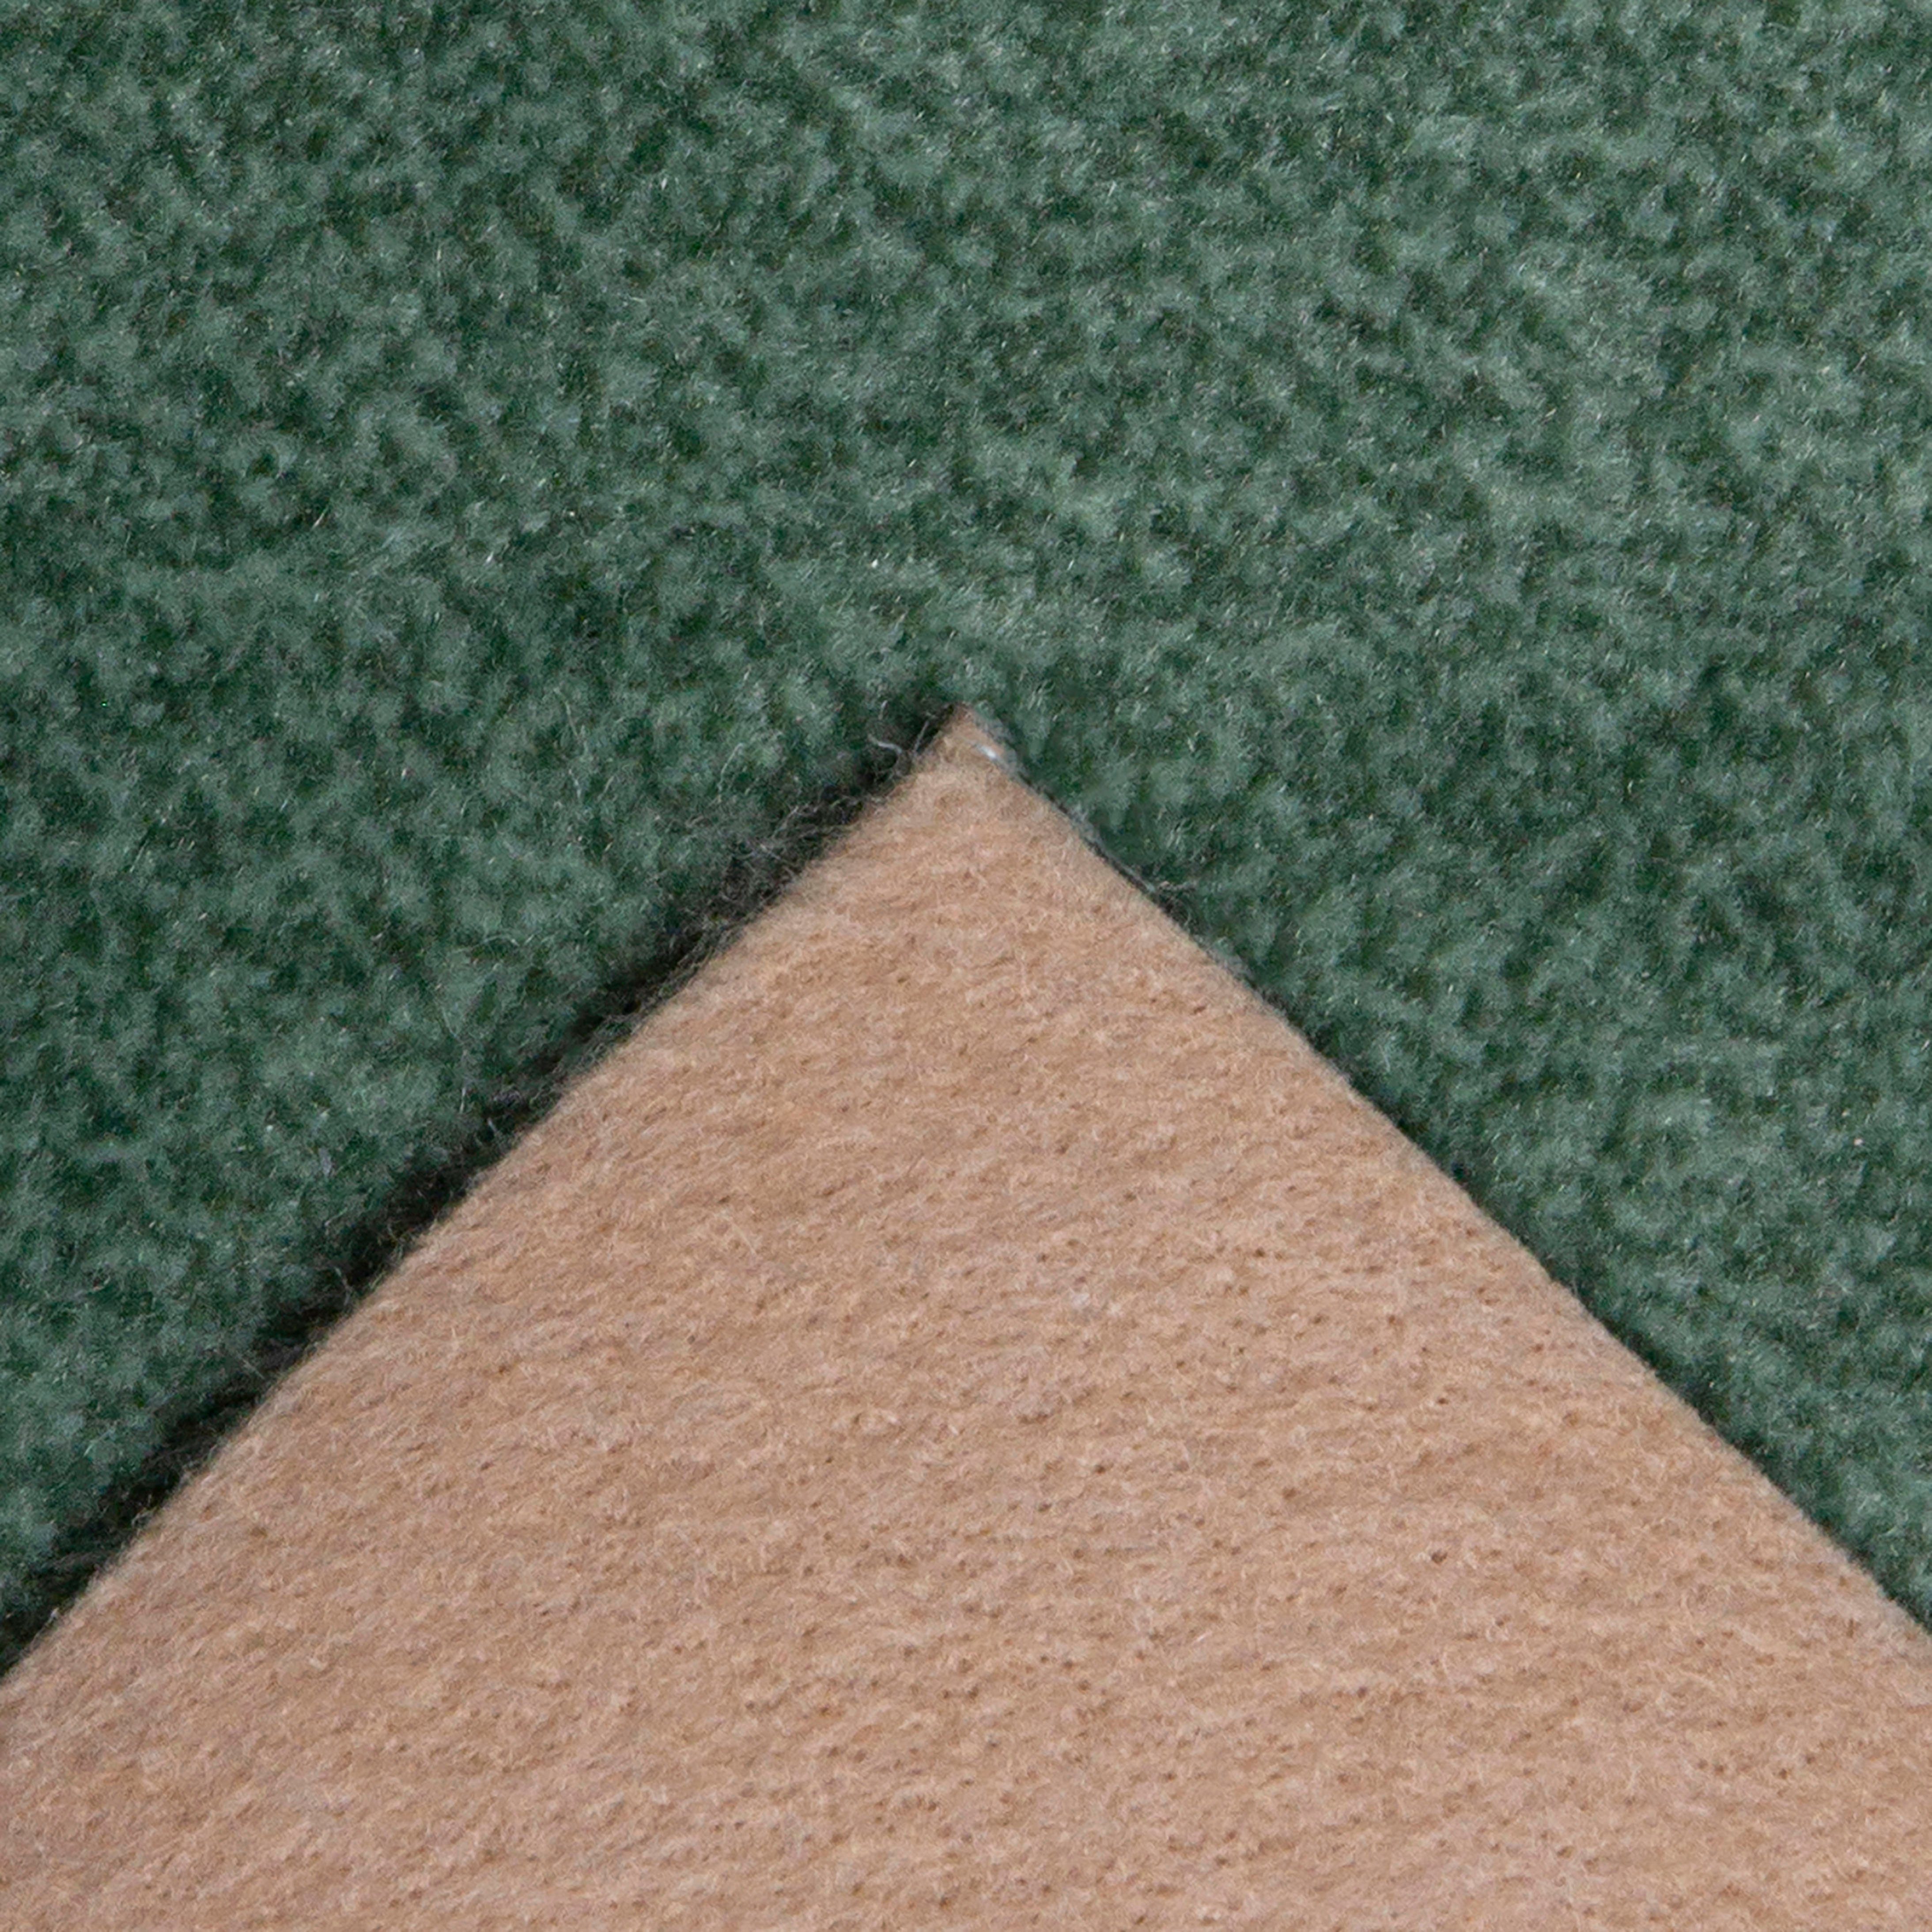 Teppichboden Coupon Velours Catania, cm, meliert, oder strapazierfähig grün 400 Andiamo, pflegeleicht mm, 500 cm rechteckig, & Breite Höhe: 7,5